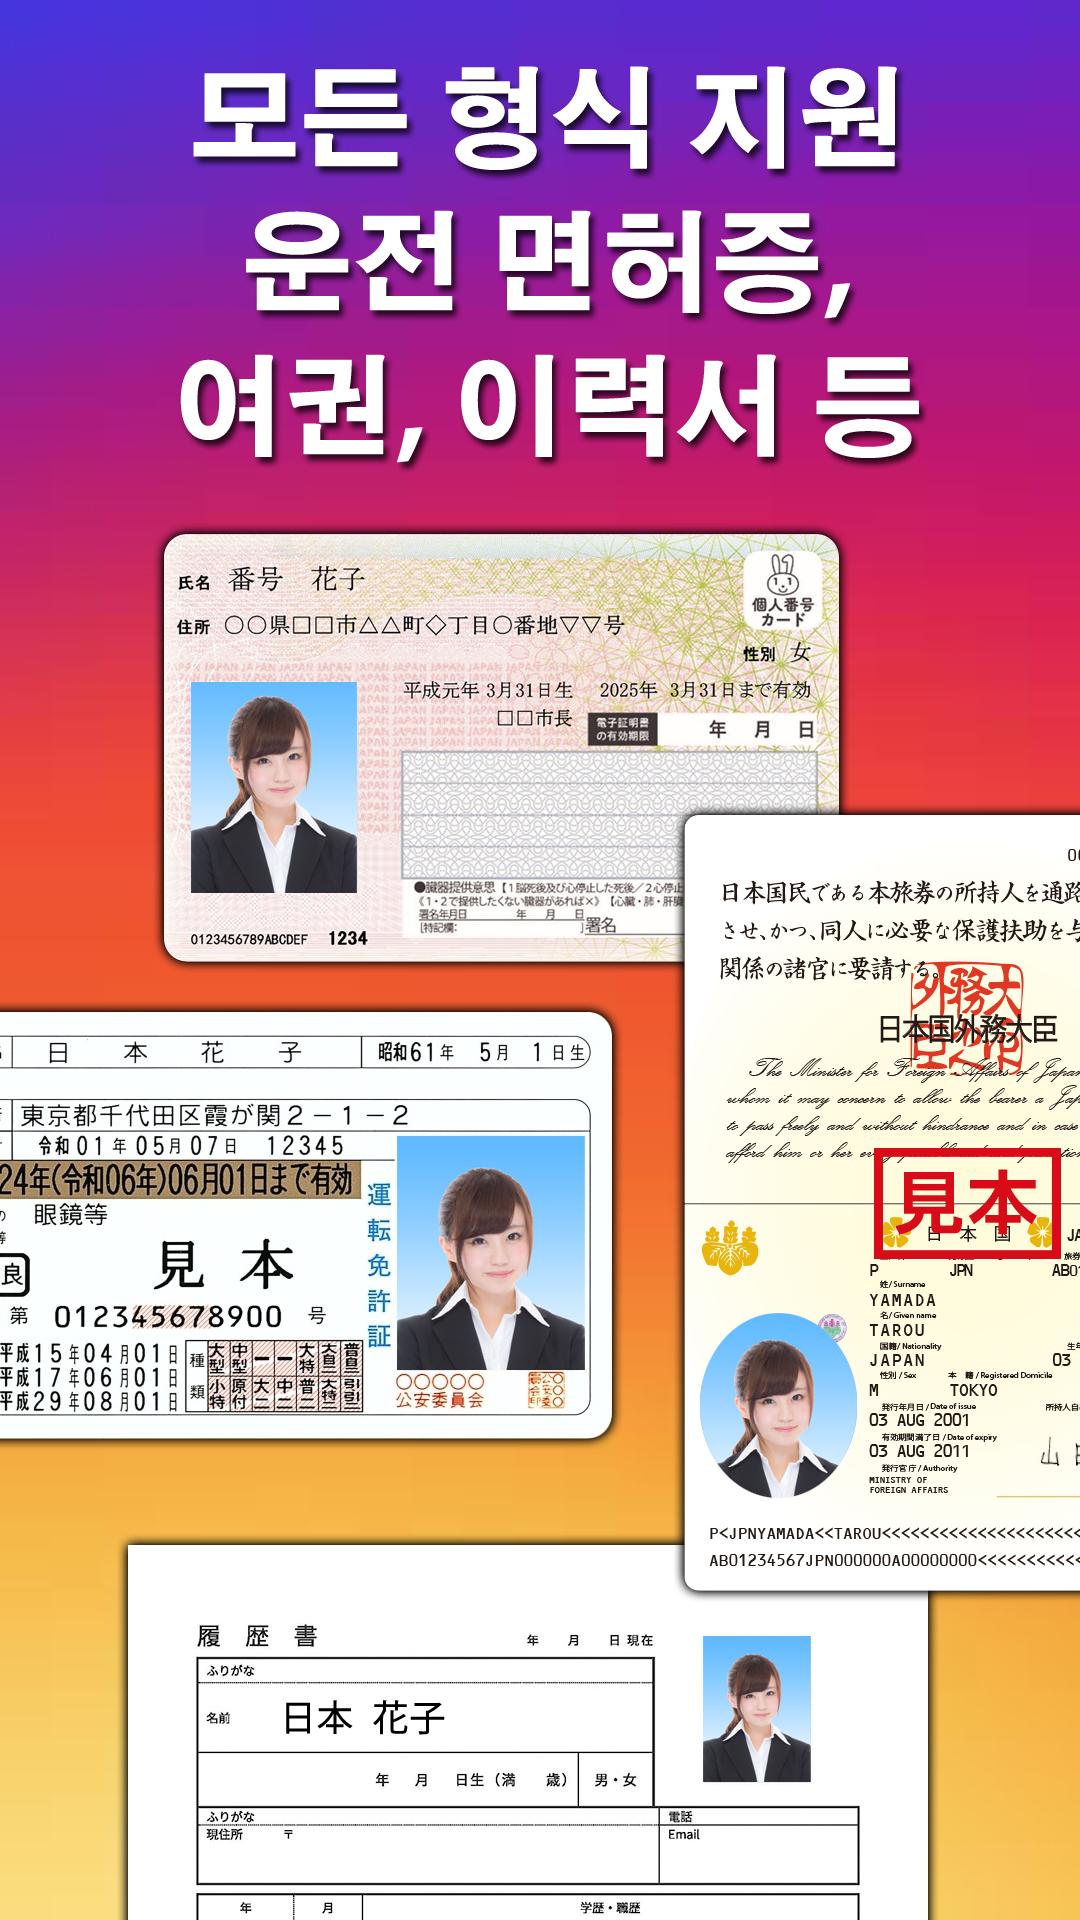 증명 사진 (여권, 운전 면허증, 이력서 등)